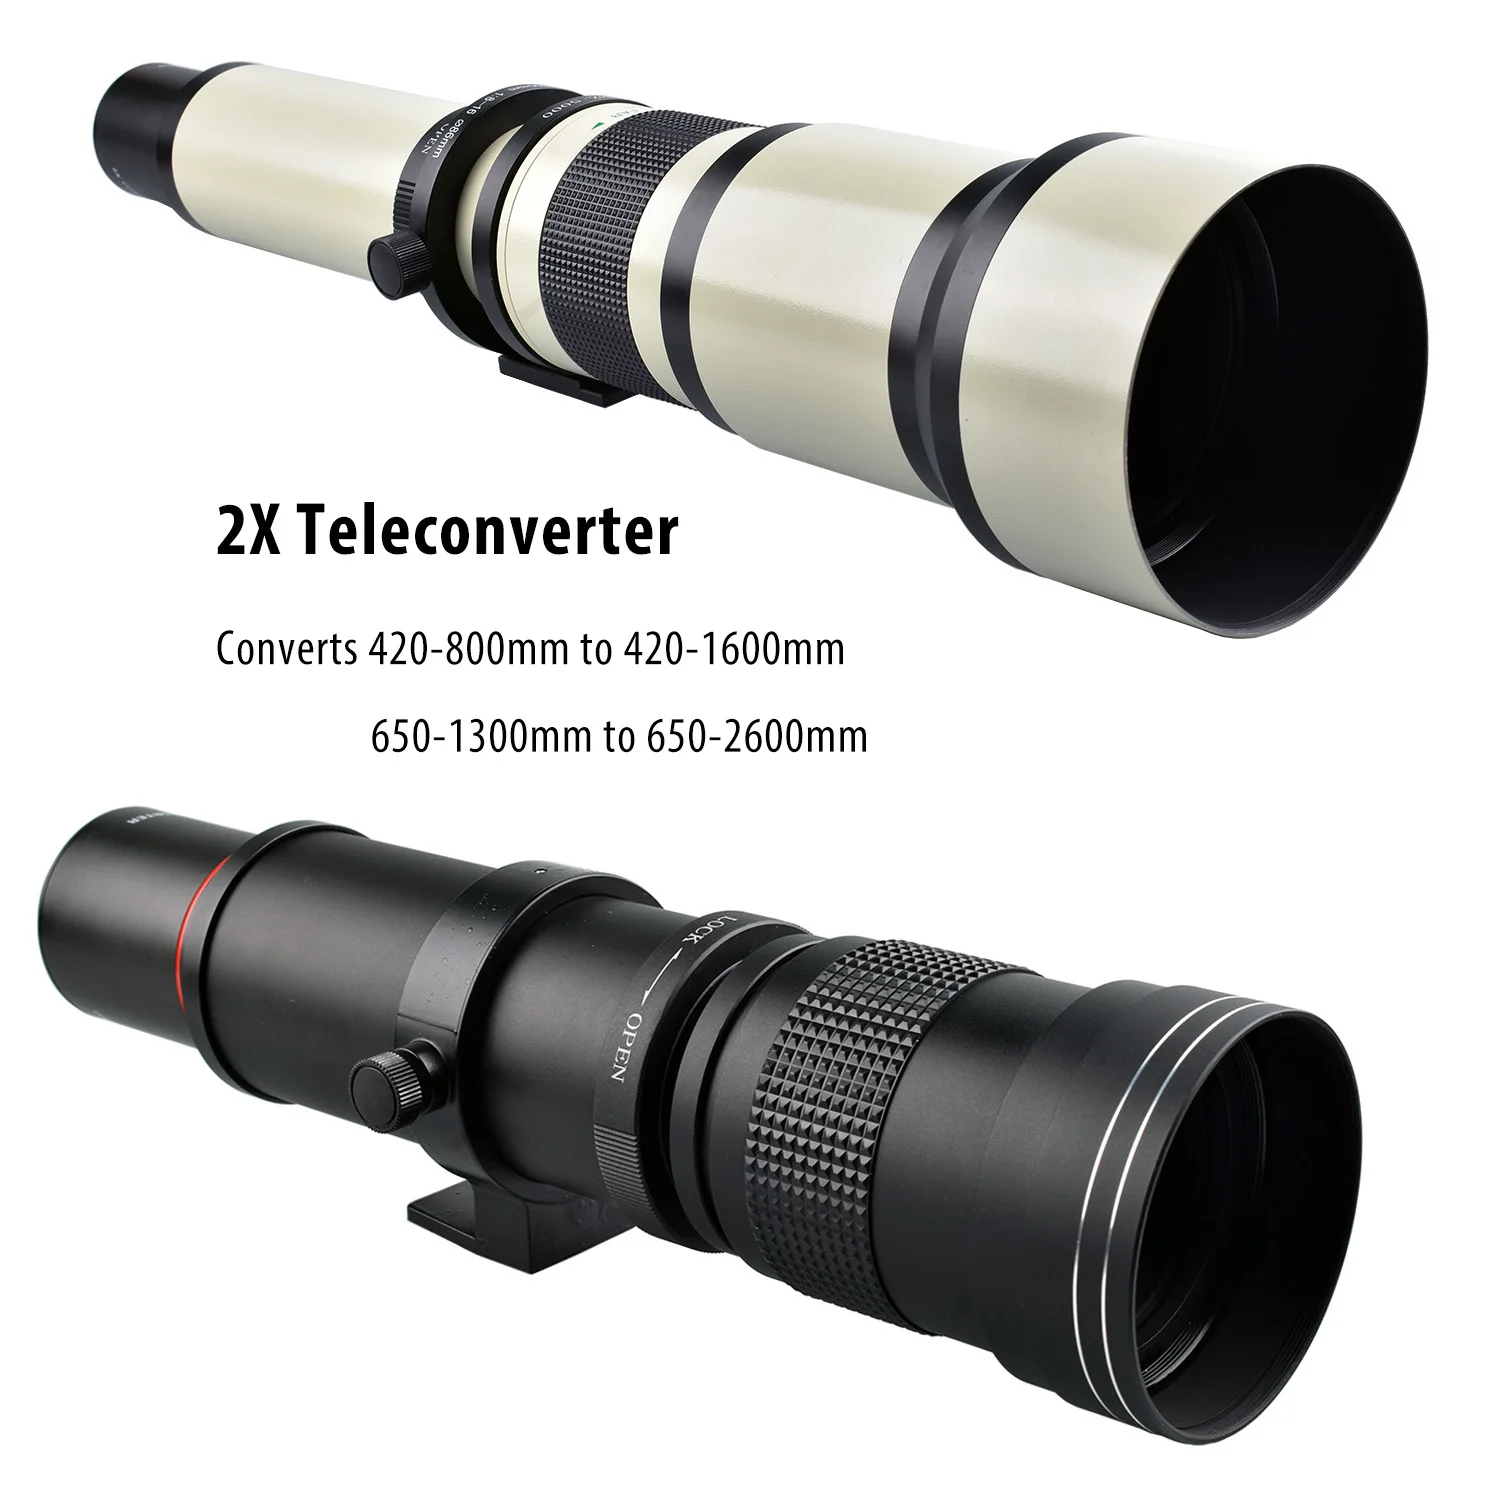 Generic 2x テレコンバーター レンズ コンバーター T マウント レンズ用 500mm 望遠レンズ 安い割引